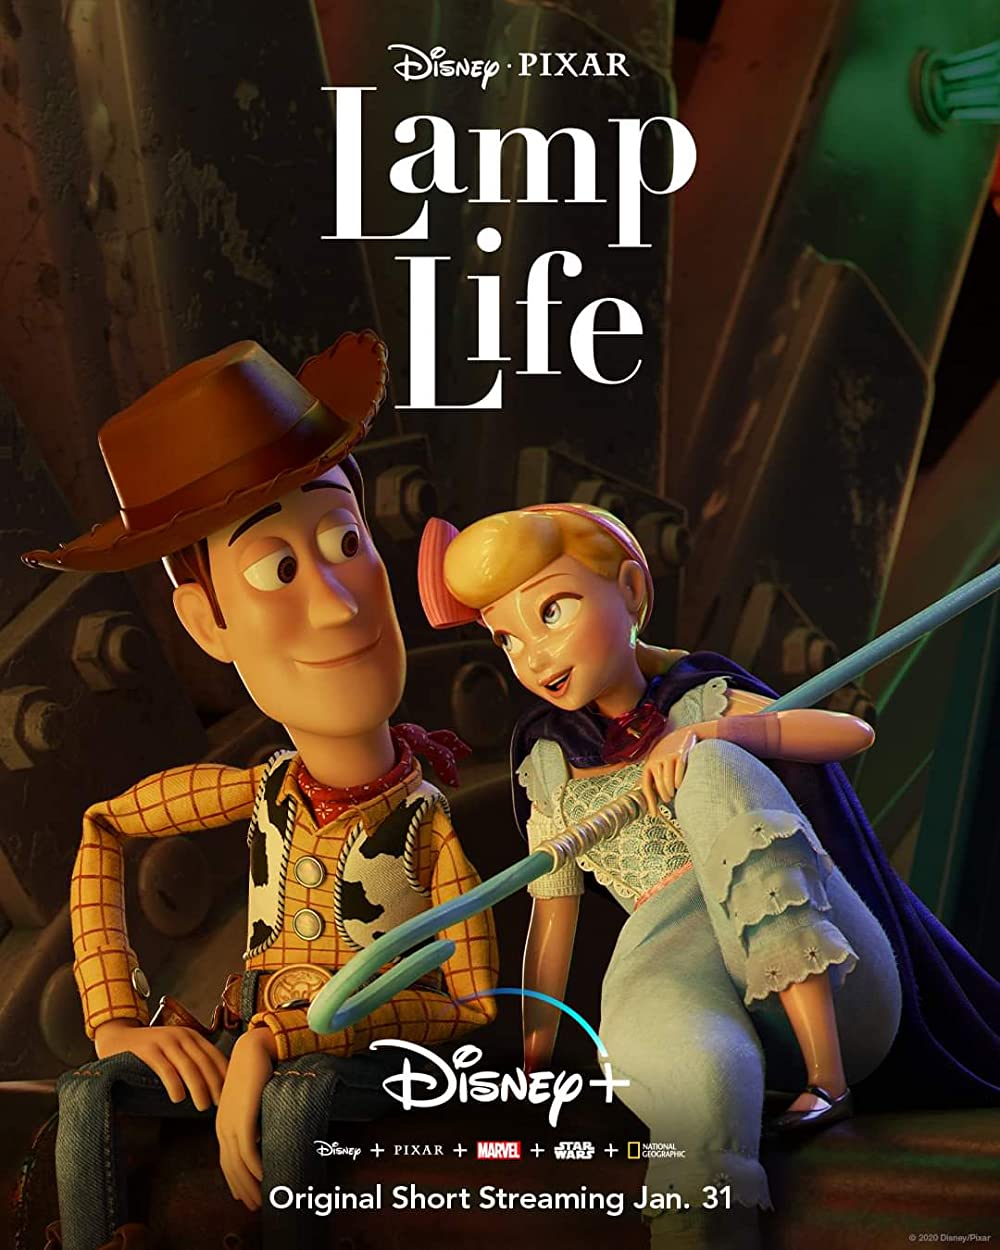 Filmbeschreibung zu Lamp Life